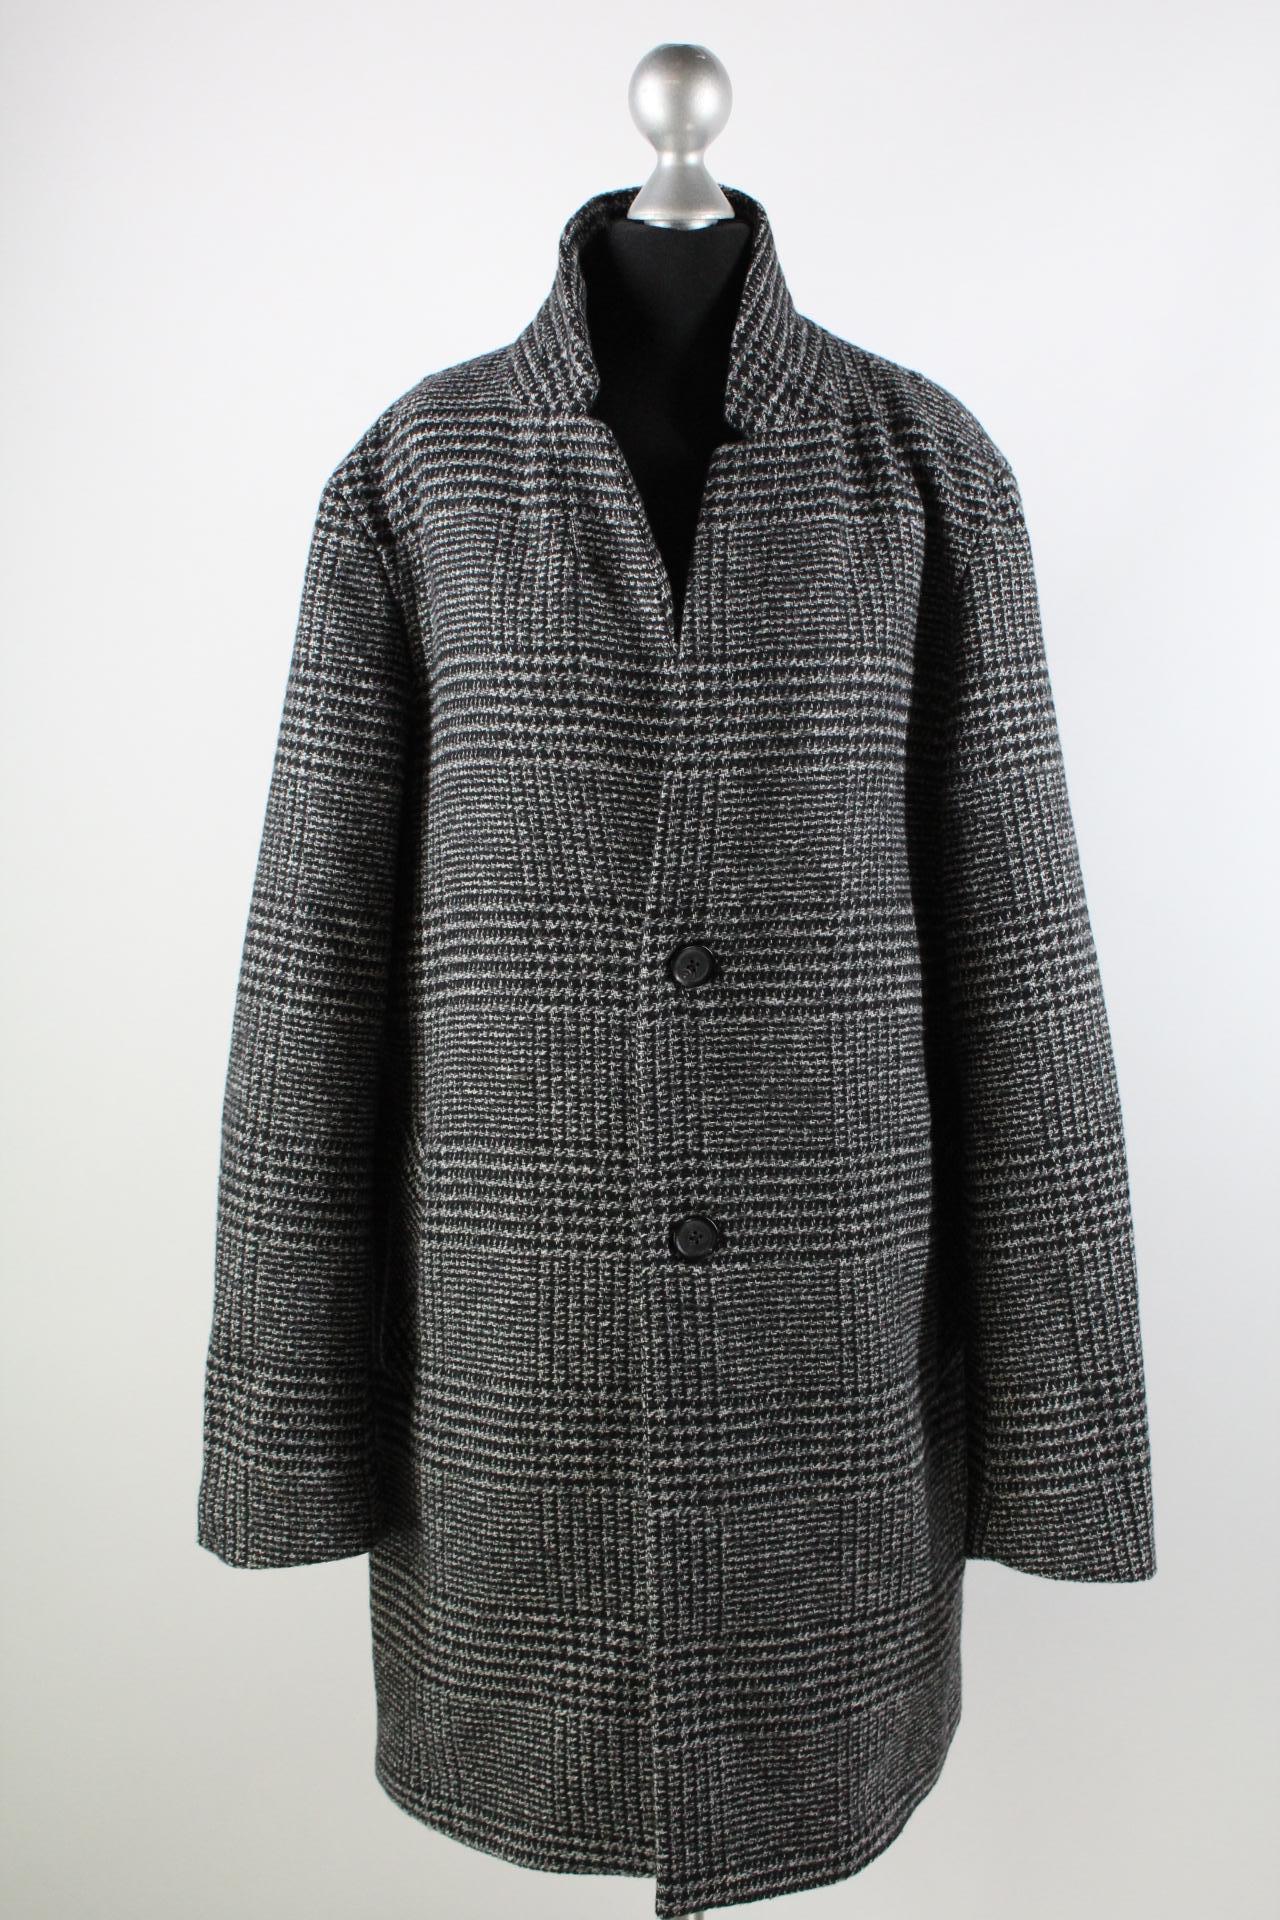 Reserved Damen-Mantel grau/schwarz Größe M